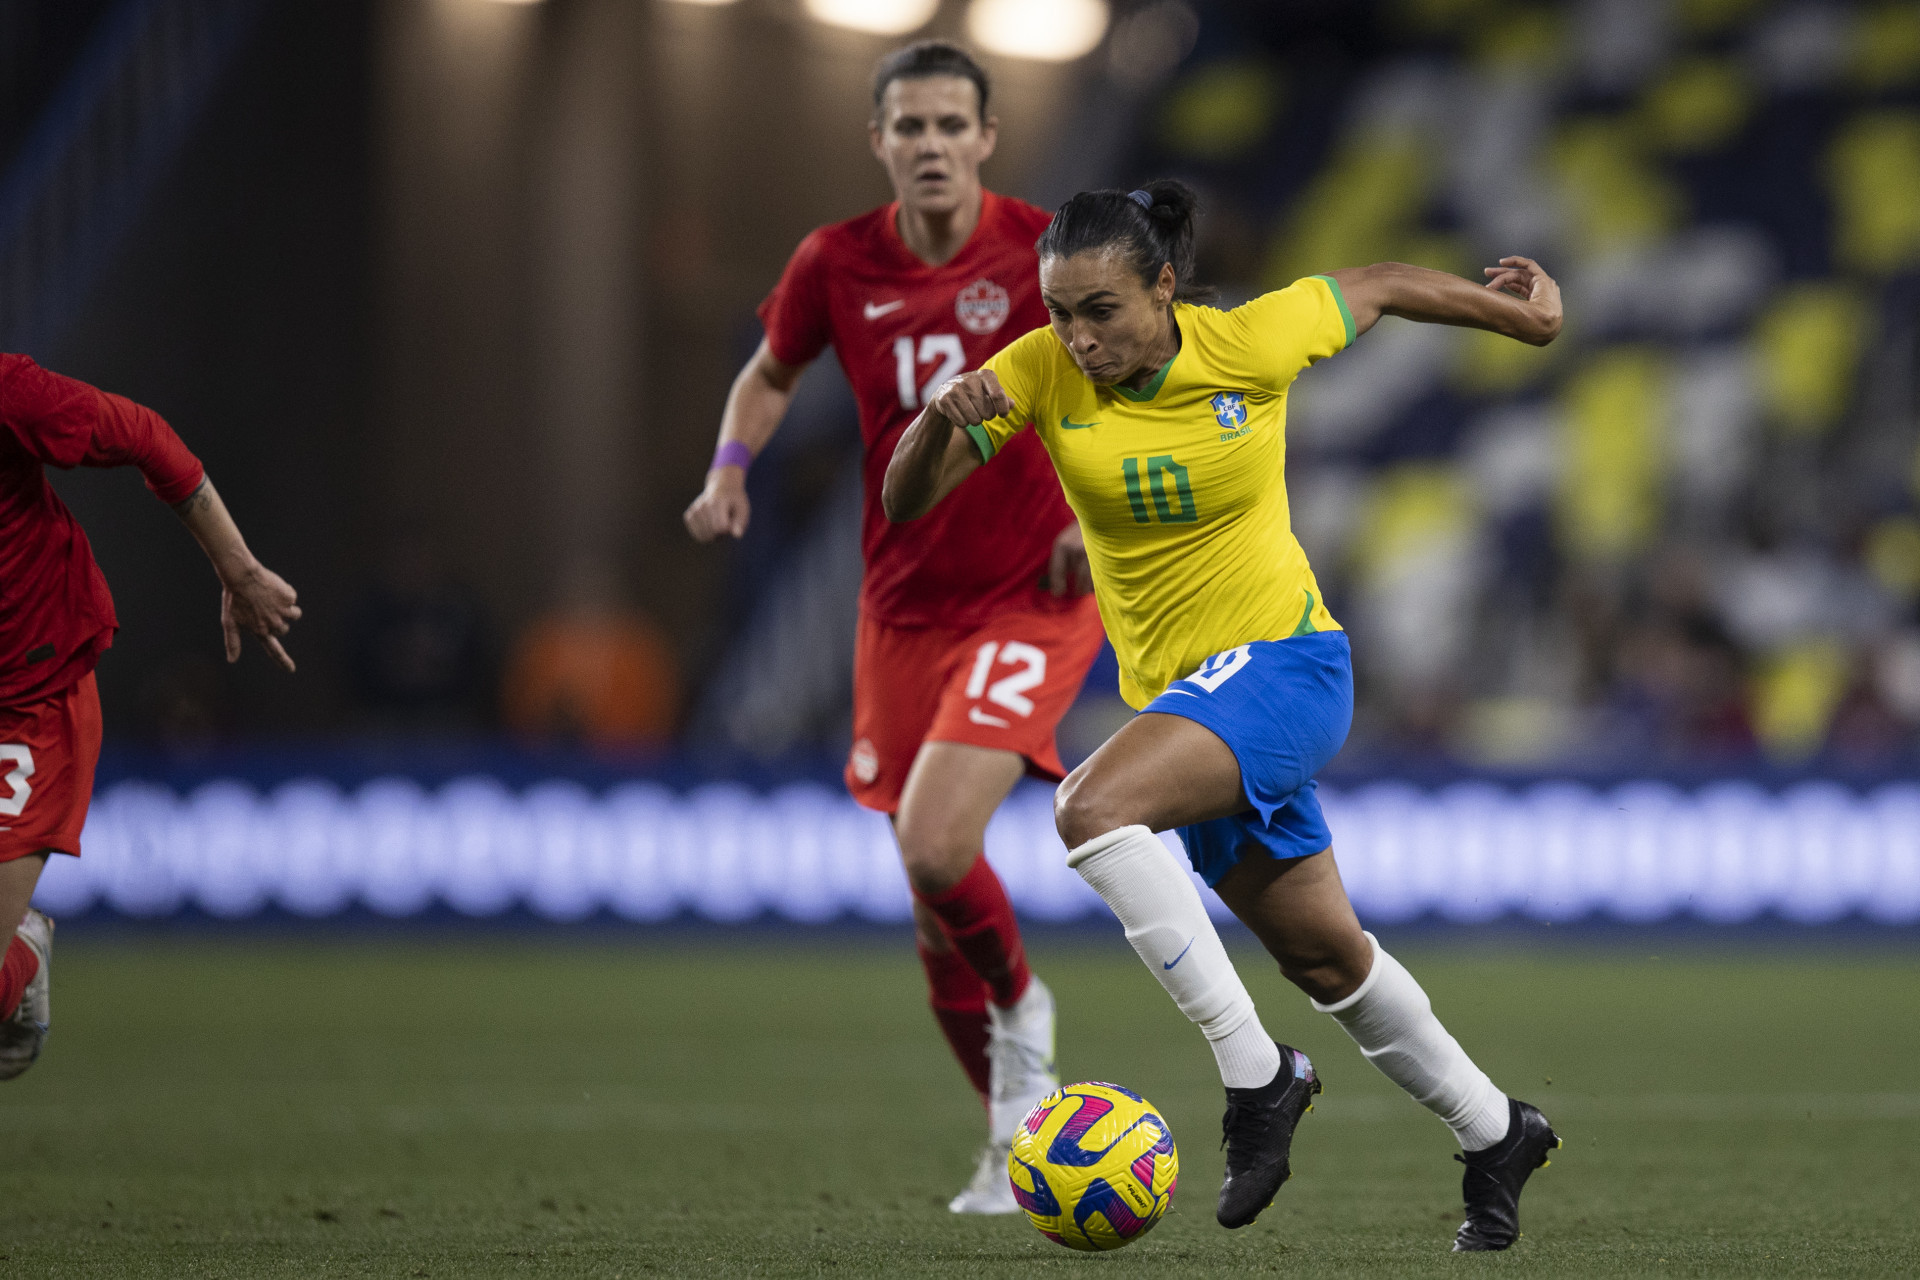 Fifa coloca em projeto limitar idade do futebol feminino nas Olimpíadas -  22/12/2021 - UOL Esporte